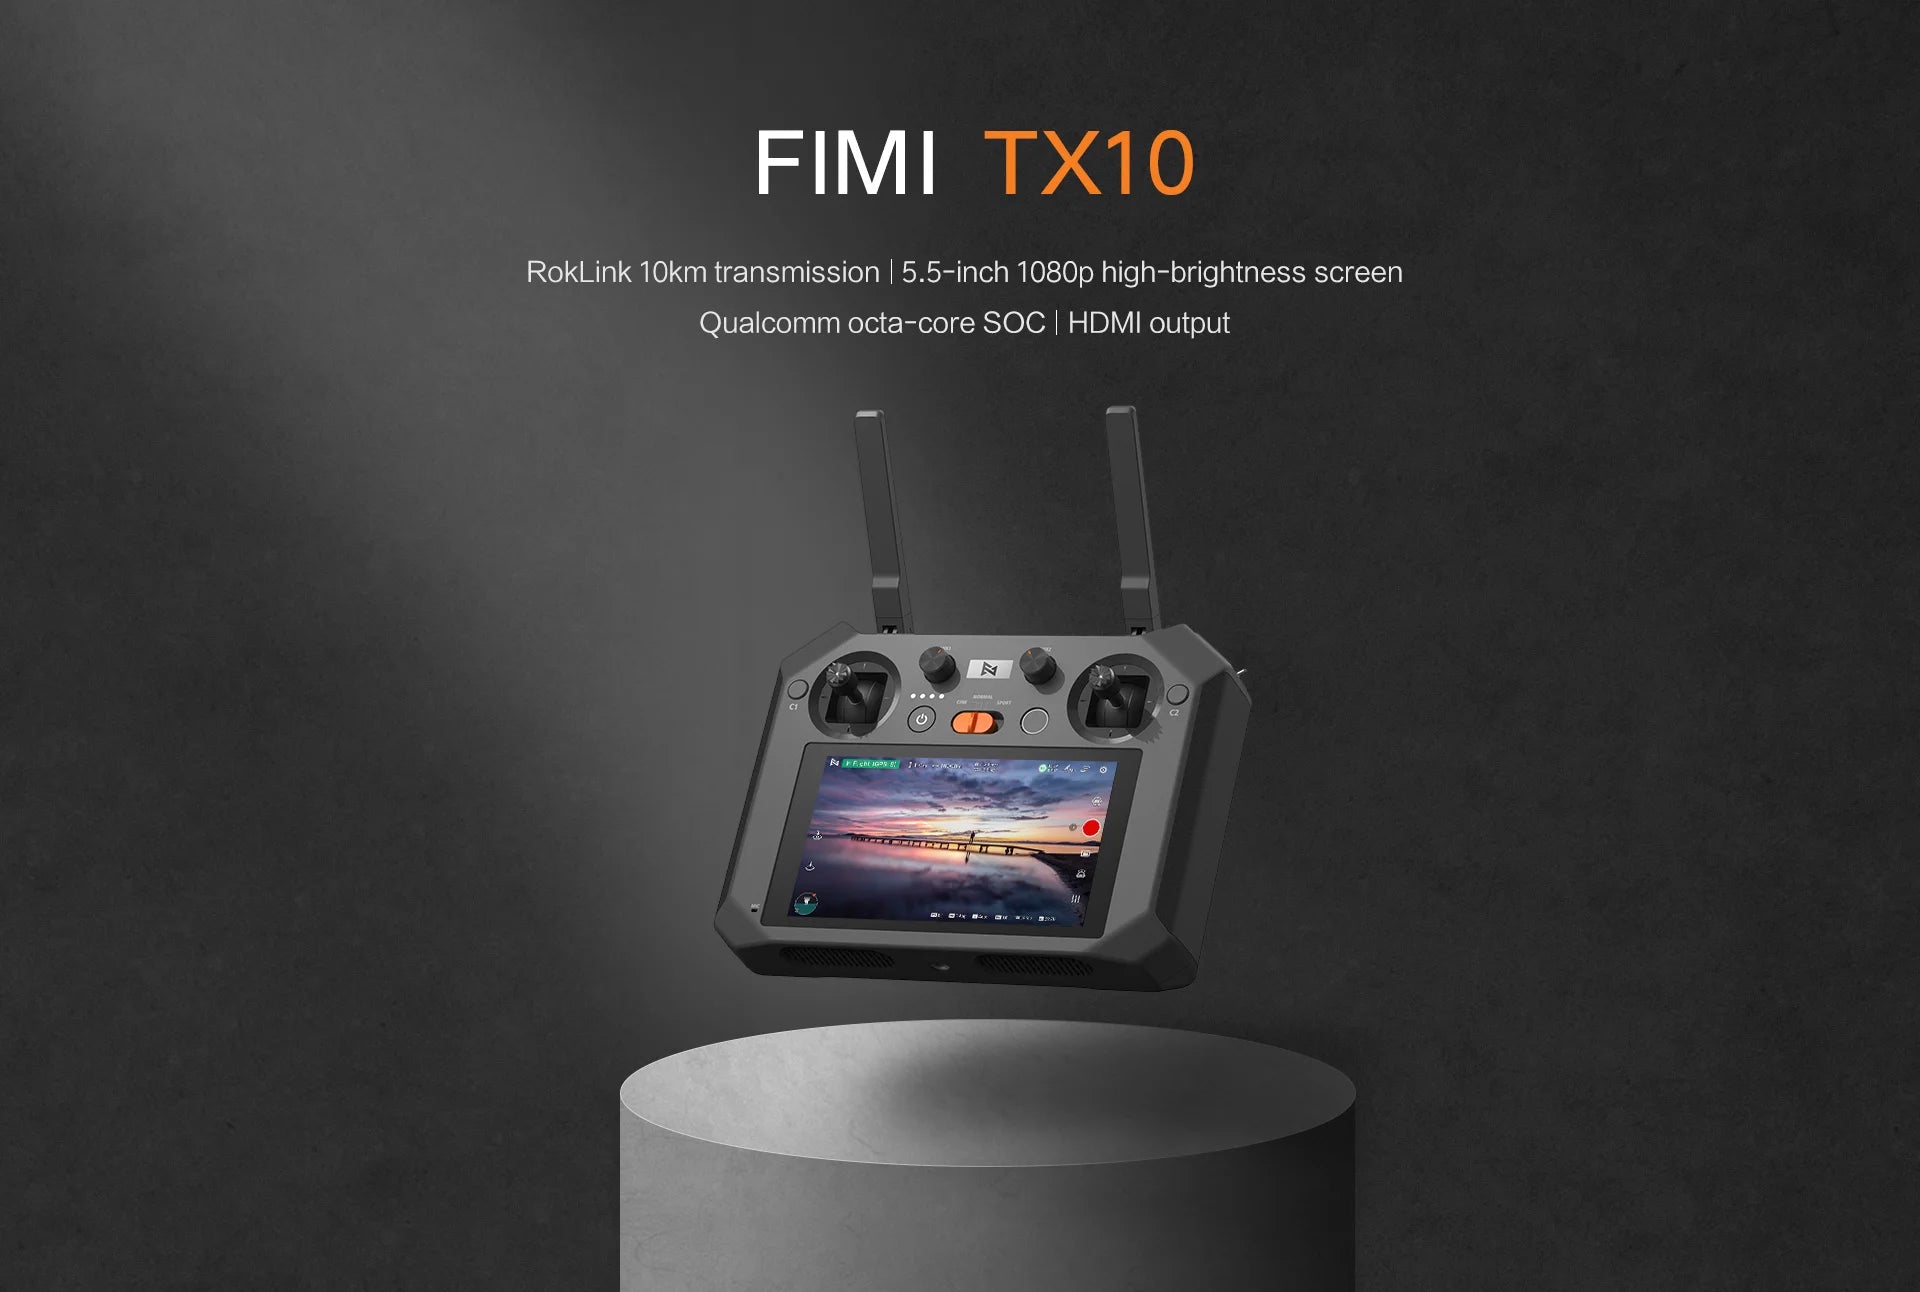 FIMI TX10 Remote Controller, FIMI TX1O RokLink 1Okm transmission 5.5-inch 